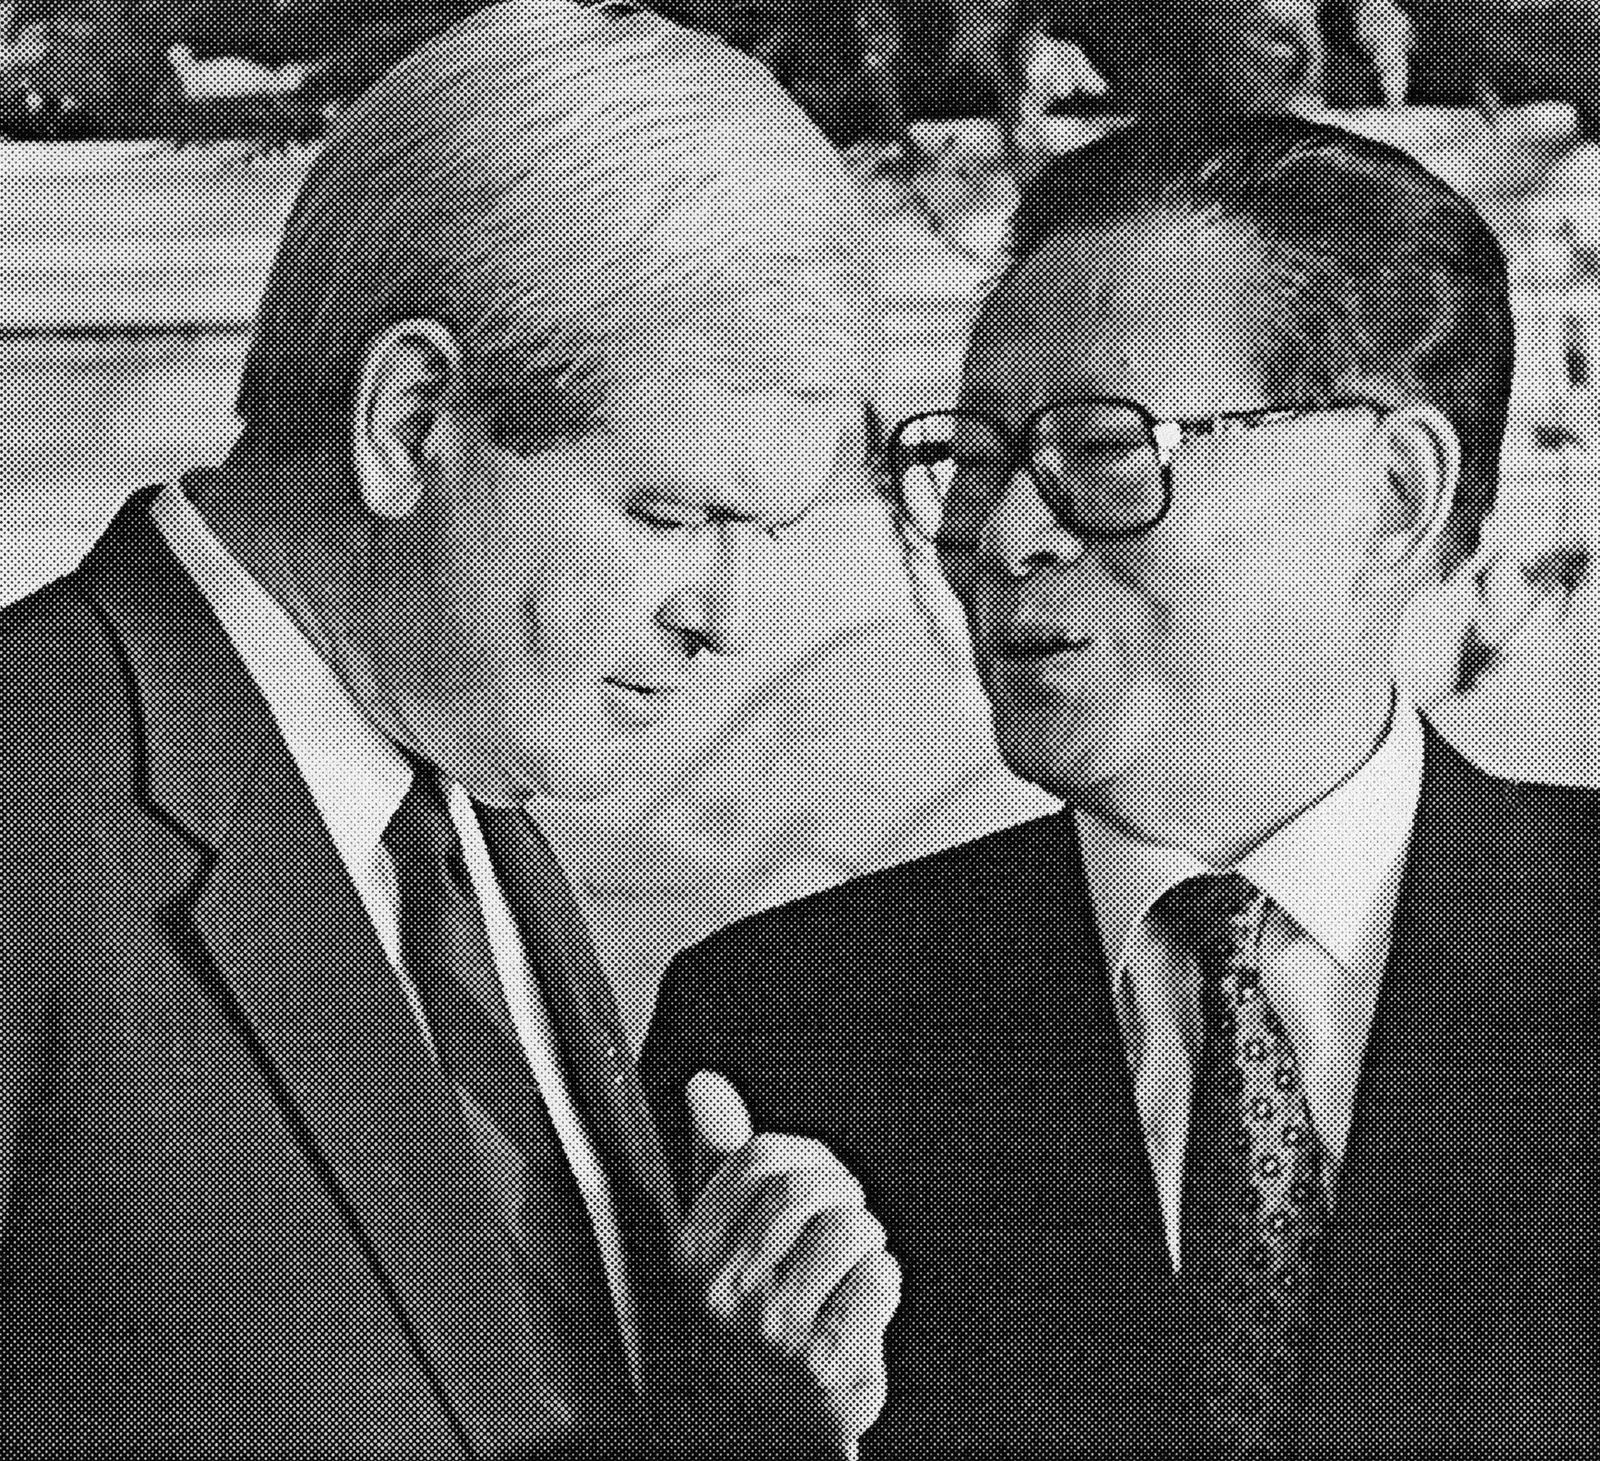 رئيس مجلس النواب الأميركي نيوت جينجريتش يتحدث مع الرئيس الصيني جيانج زيمين. أكتوبر 1997 - getty